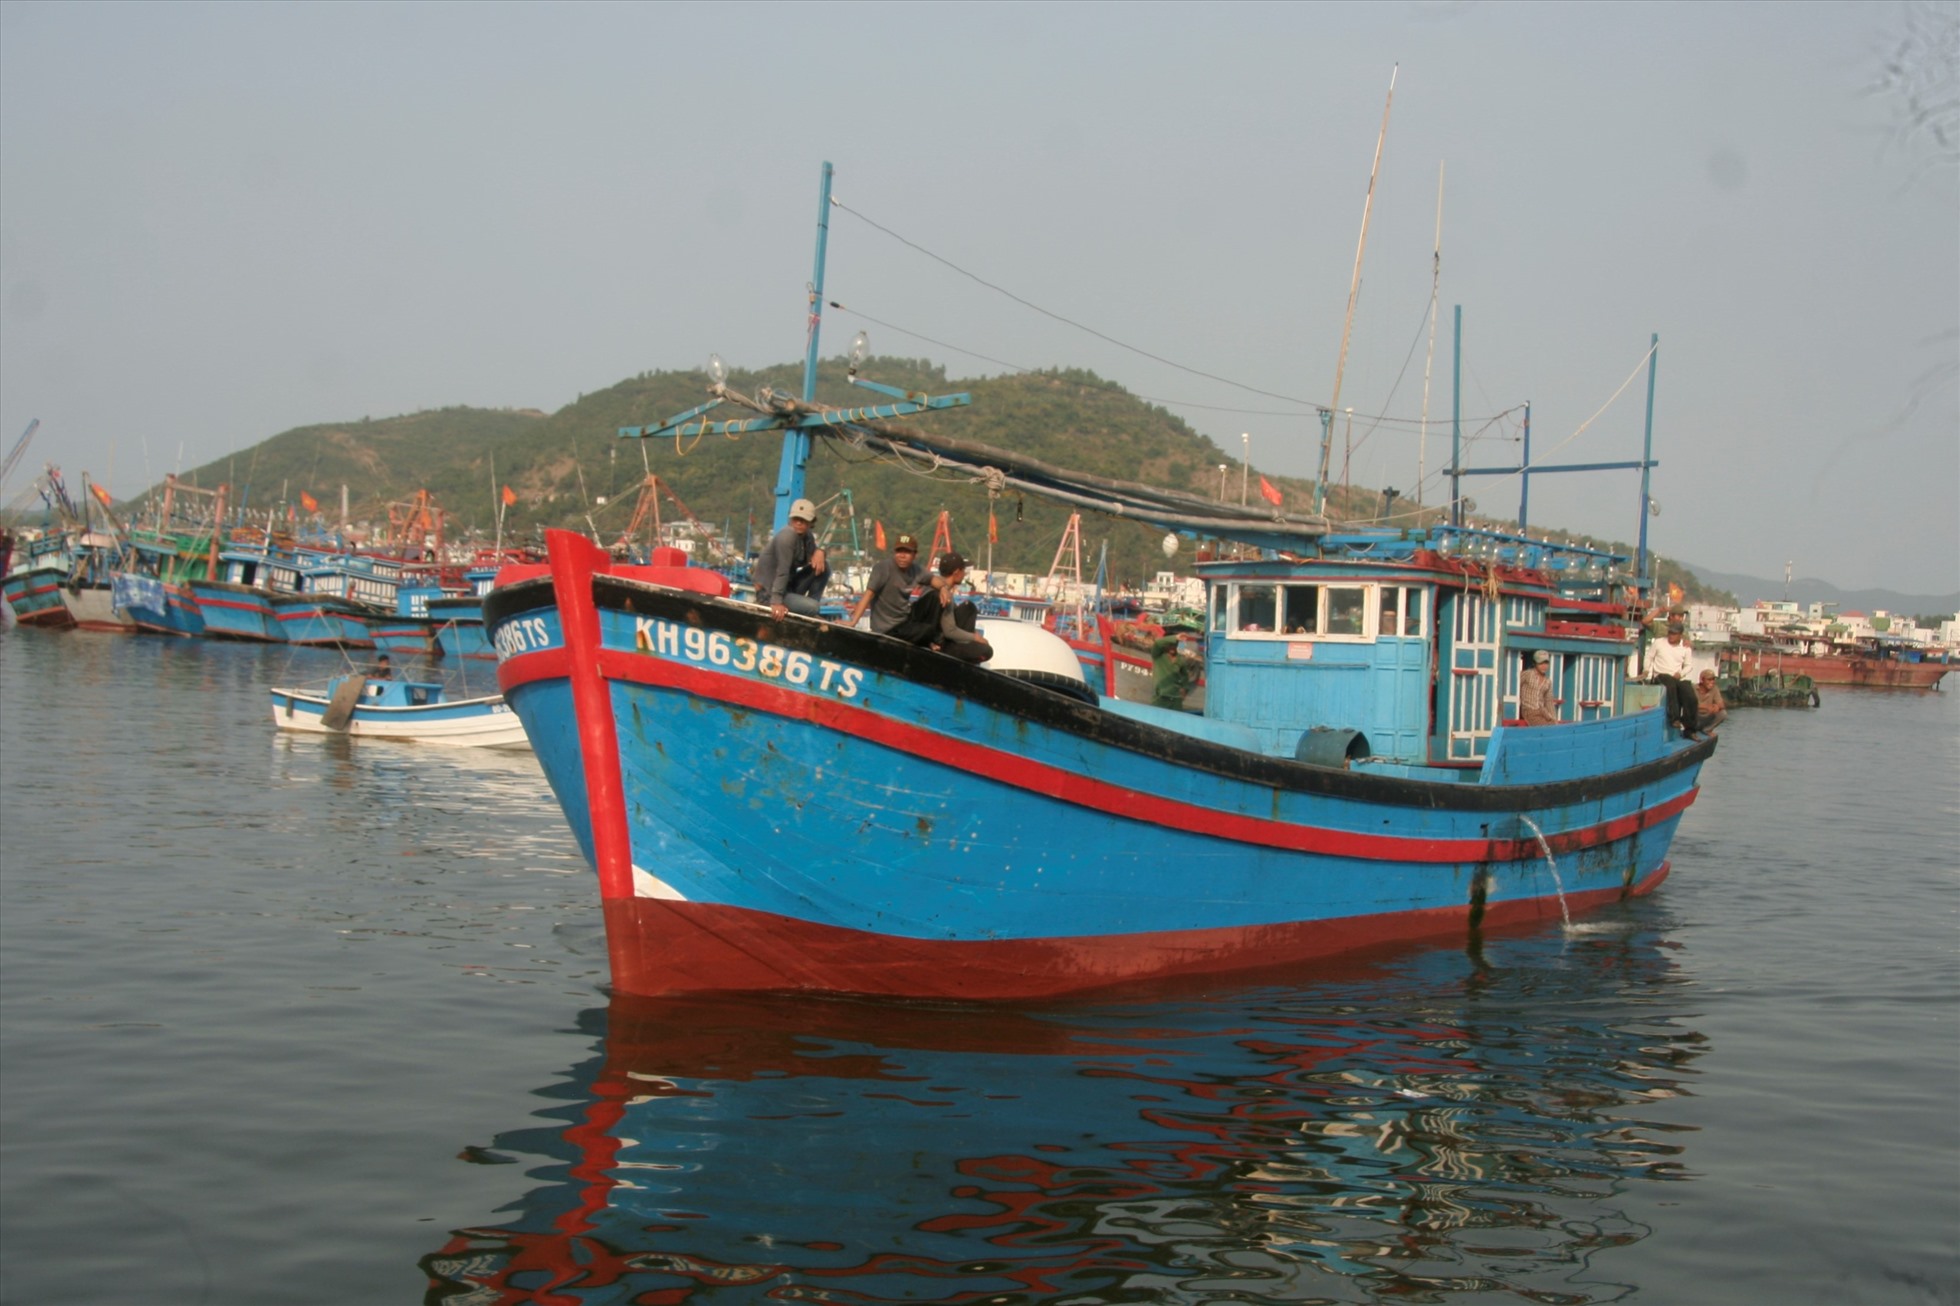 Sau những khó khăn ngư dân Nguyễn Tèo và bạn thuyền lại cùng con tàu của mình tiếp tục vươn khơi. Ảnh: P.L